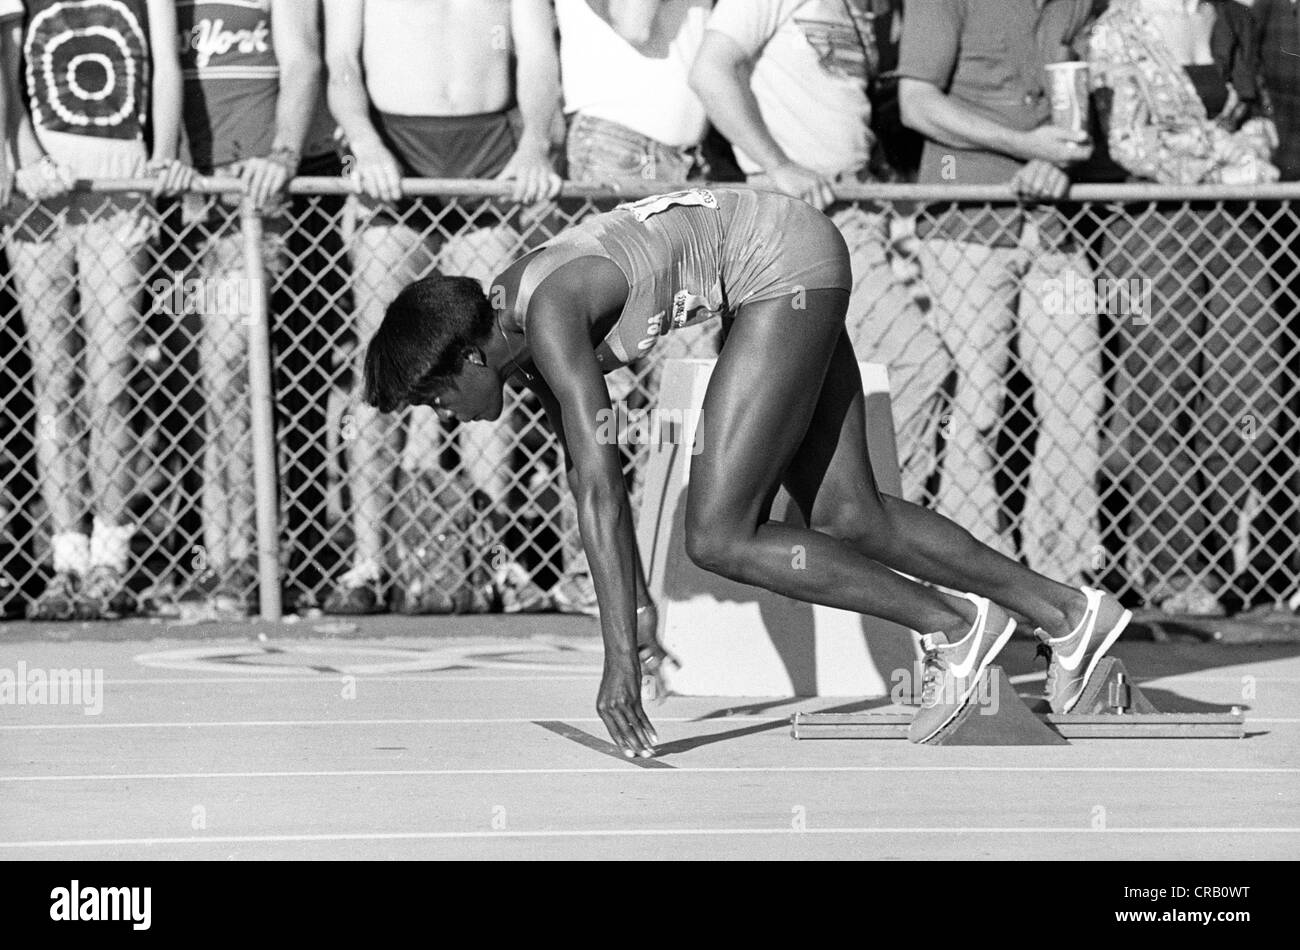 Chandra Cheeseborough en compétition aux 1980 Jeux Olympiques nous suivre et d'essais sur le terrain. Banque D'Images